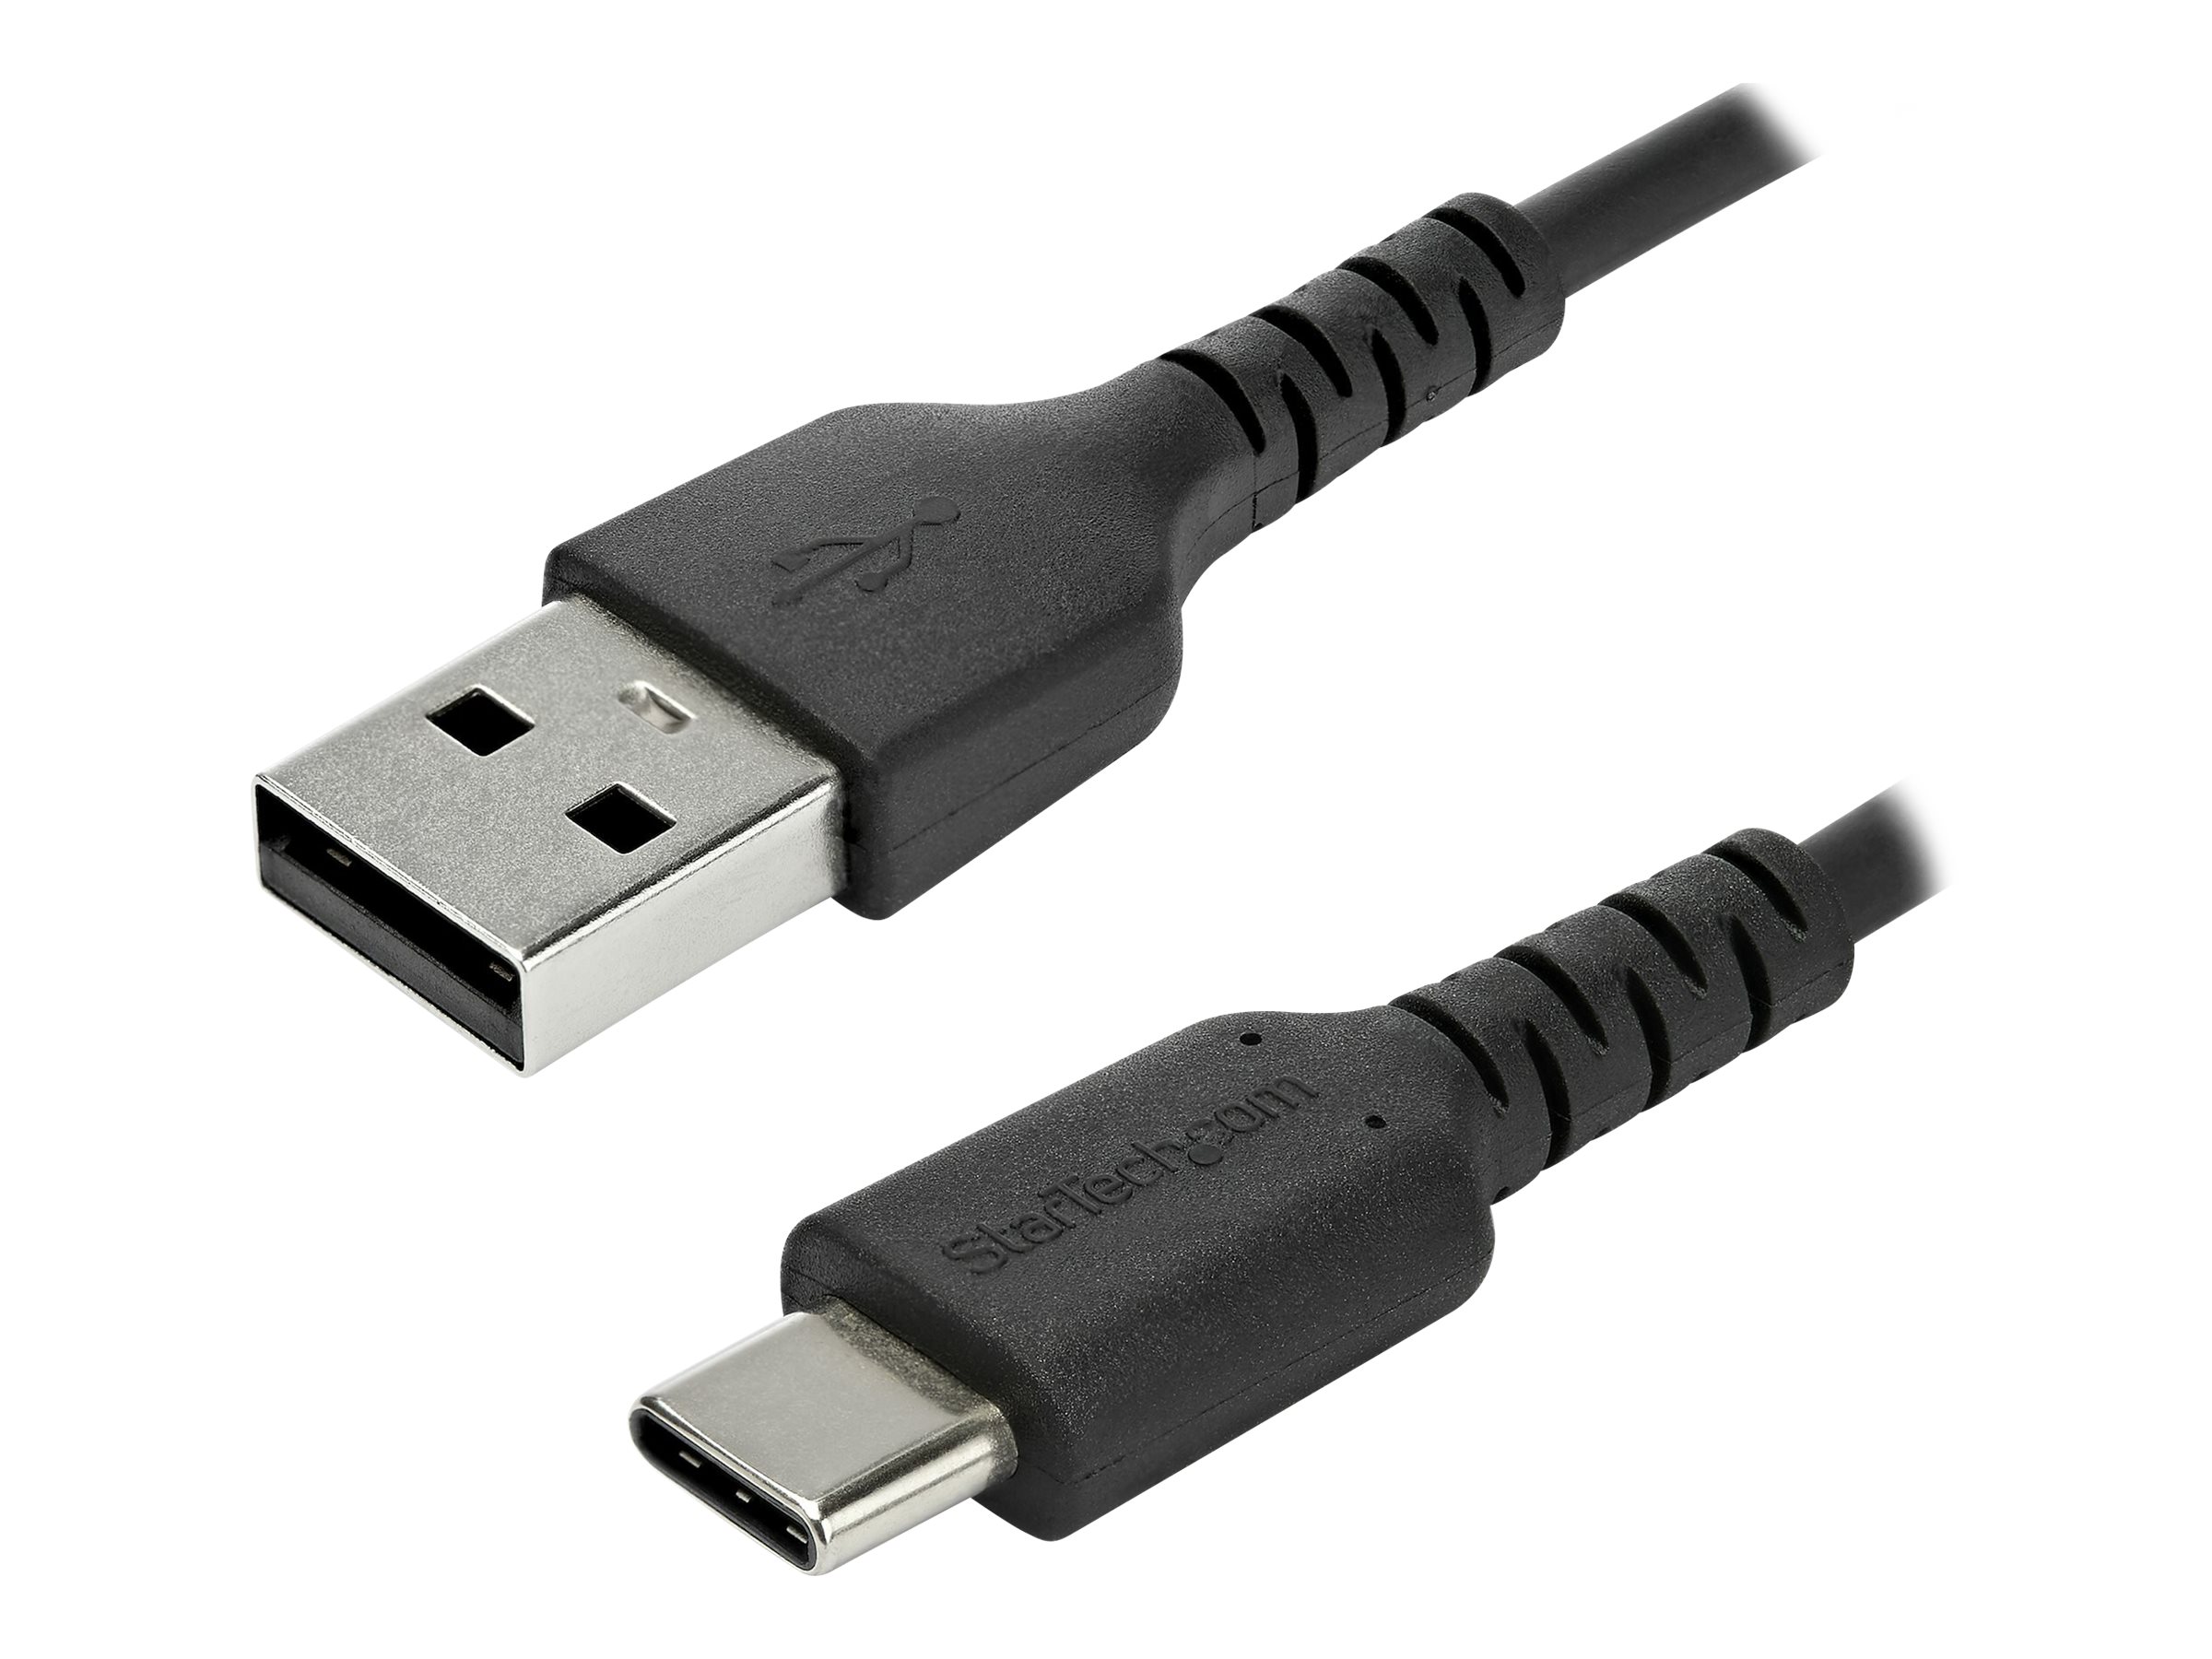 StarTech.com 2m USB-A auf USB-C Ladekabel - Dauerhaftes USB 2.0 auf USB Typ-C Datenübertragungs- und Schnellladekabel - Robuster TPE-Mantel Aramidfaser, M/M, 3A - Schwarz (RUSB2AC2MB)